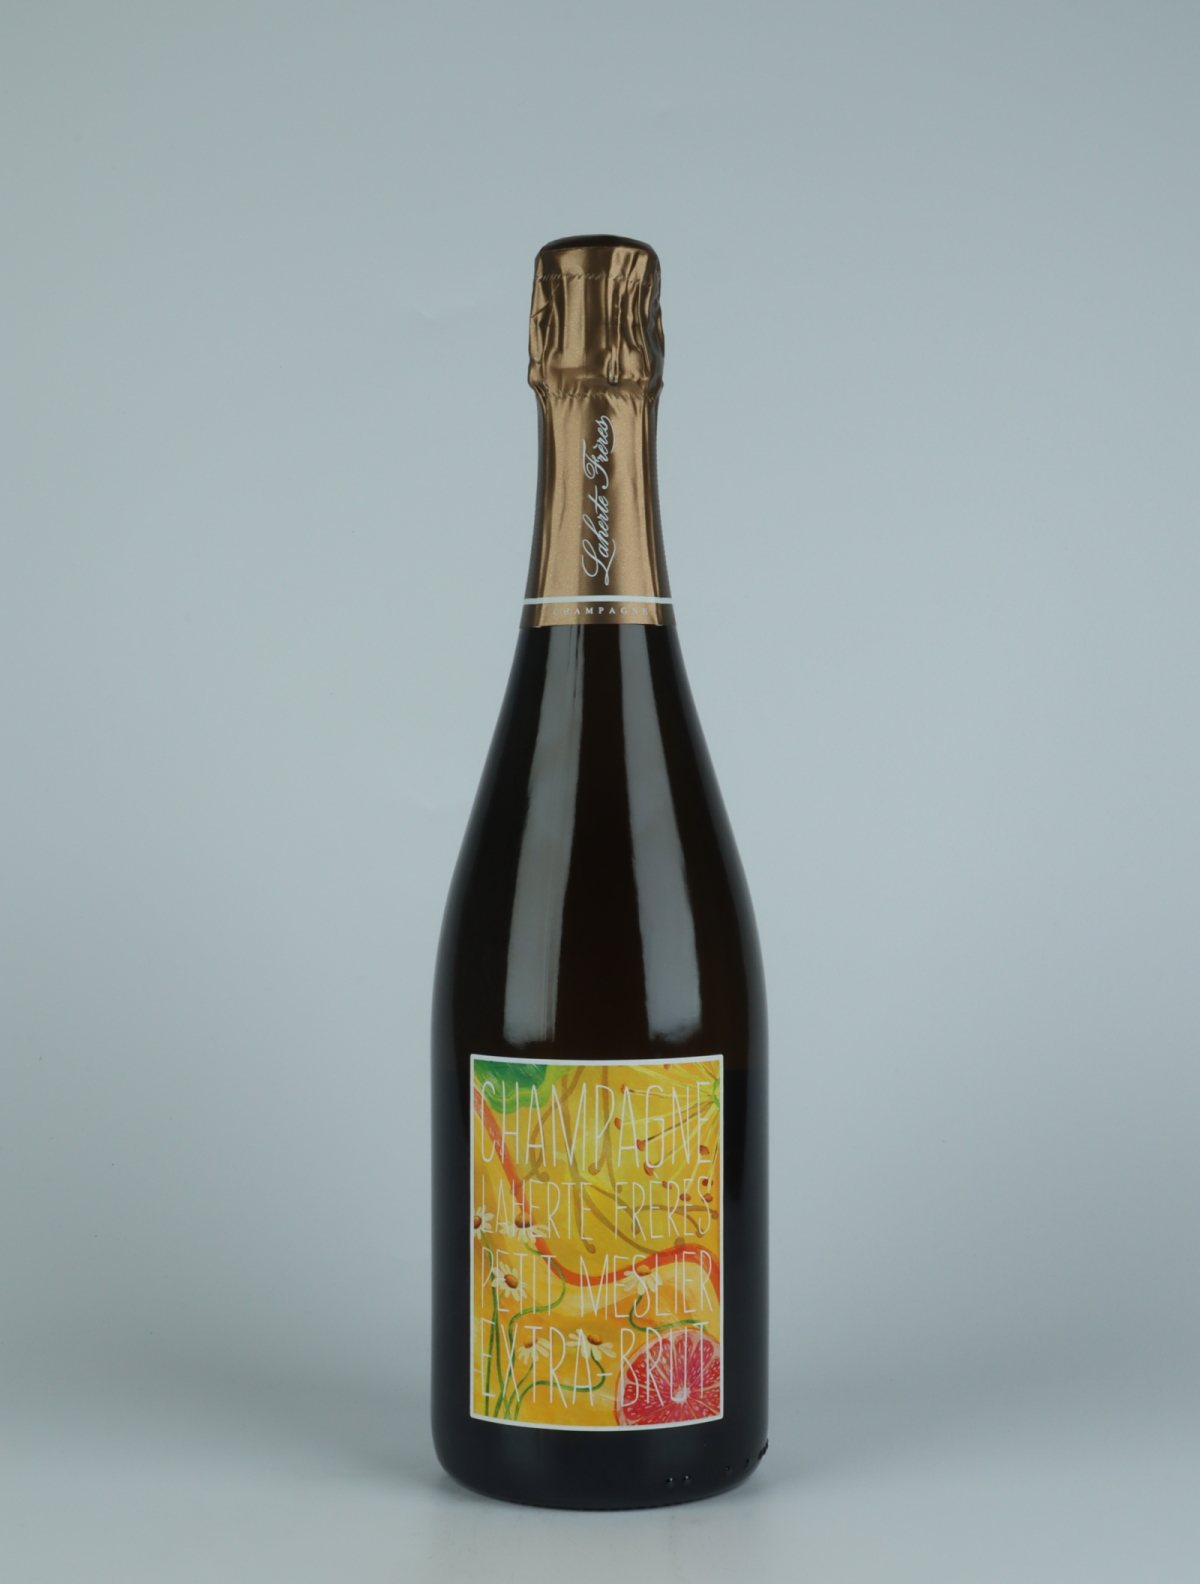 En flaske N.V. Petit Meslier - Extra Brut Mousserende fra Laherte Frères, Champagne i Frankrig